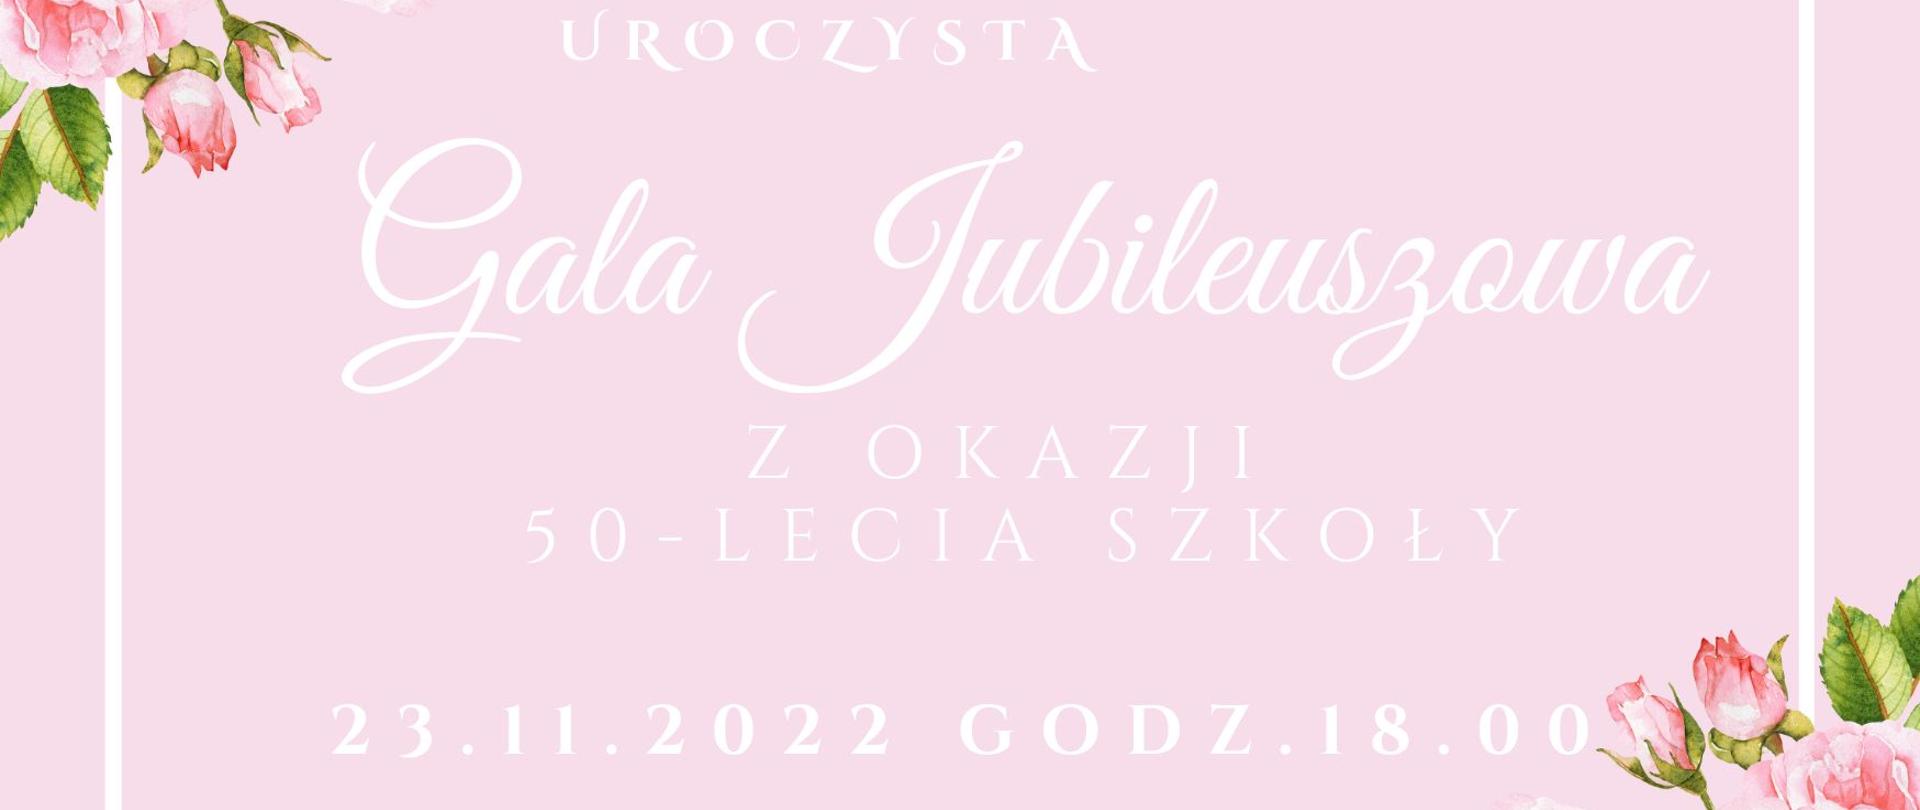 Plakat na różowym tle, z grafiką bukietu z róż w rogach górnym i dolnym i napisami informującymi o dacie gali jubileuszowej PSM w Malborku